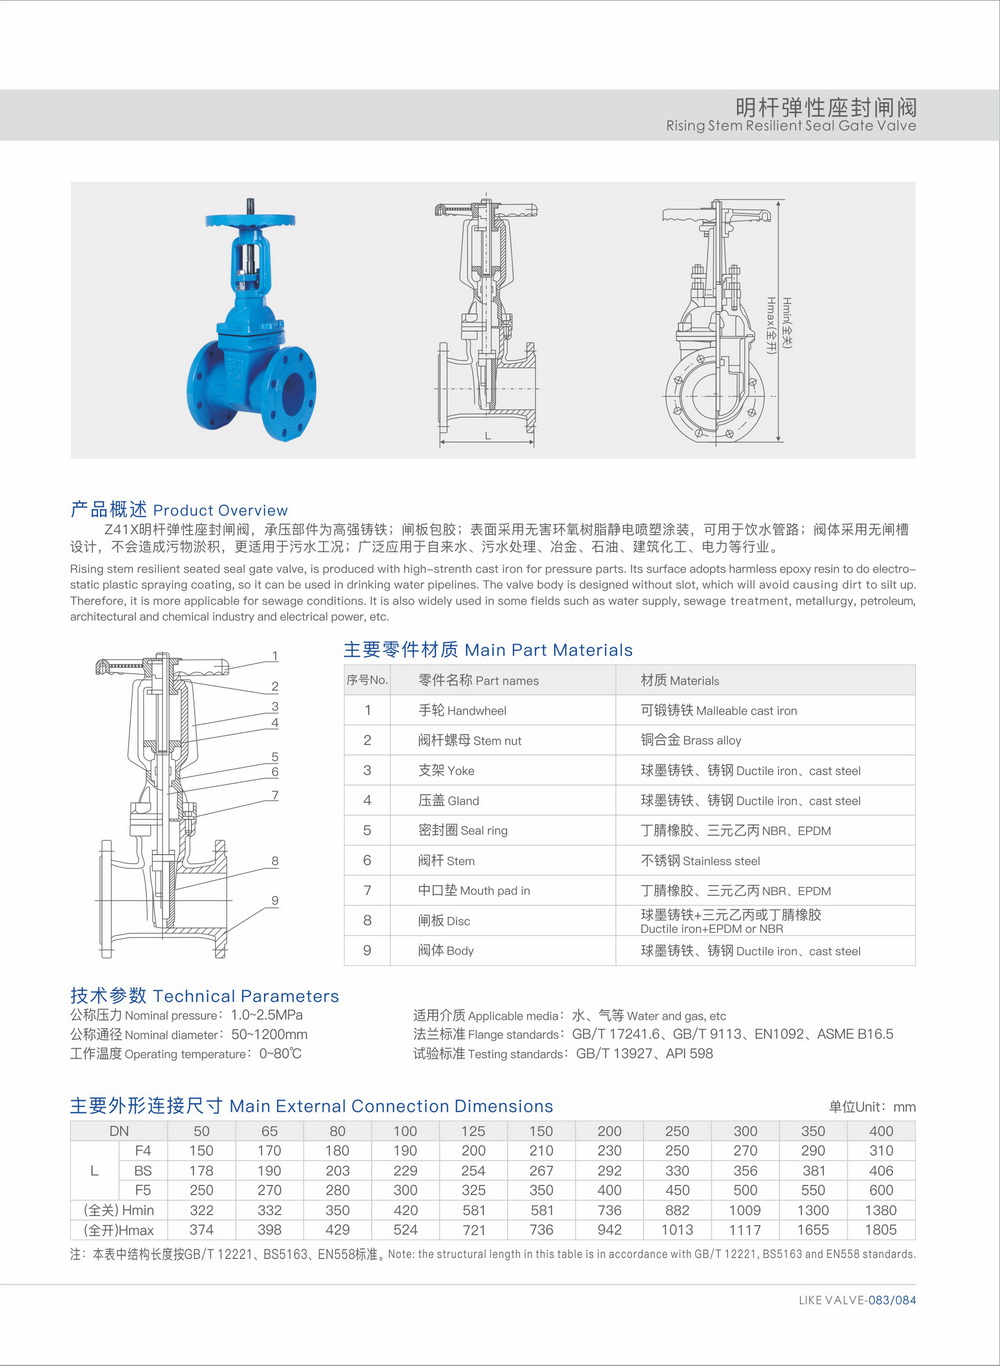 Diseño y aplicación de válvula de compuerta con sellado de asiento elástico de vástago ascendente